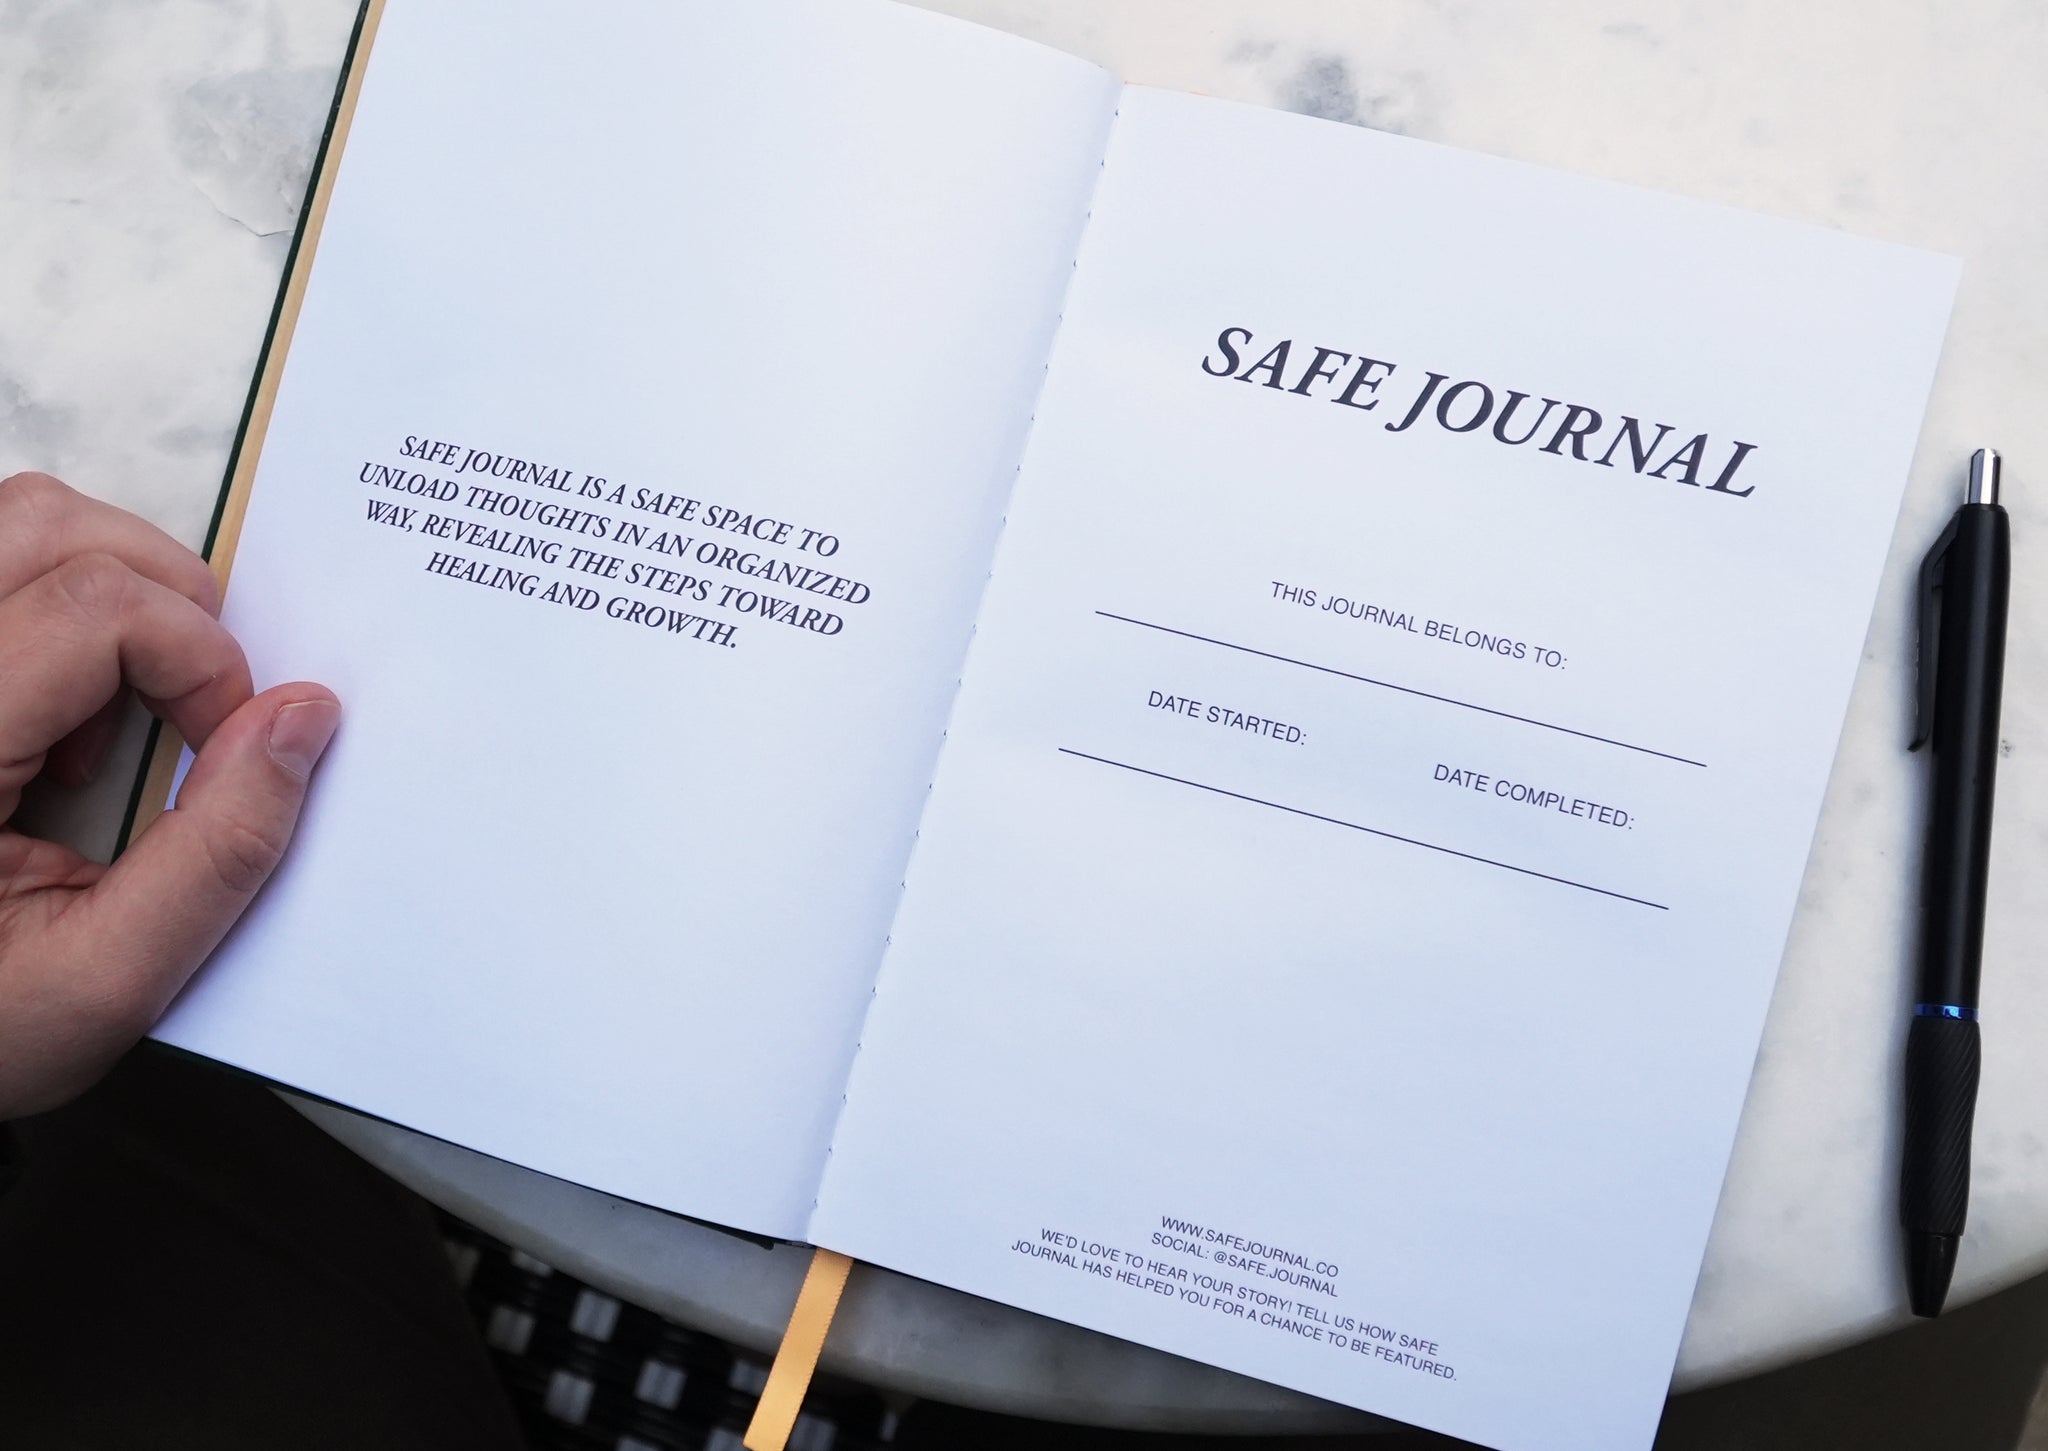 Safe Journal